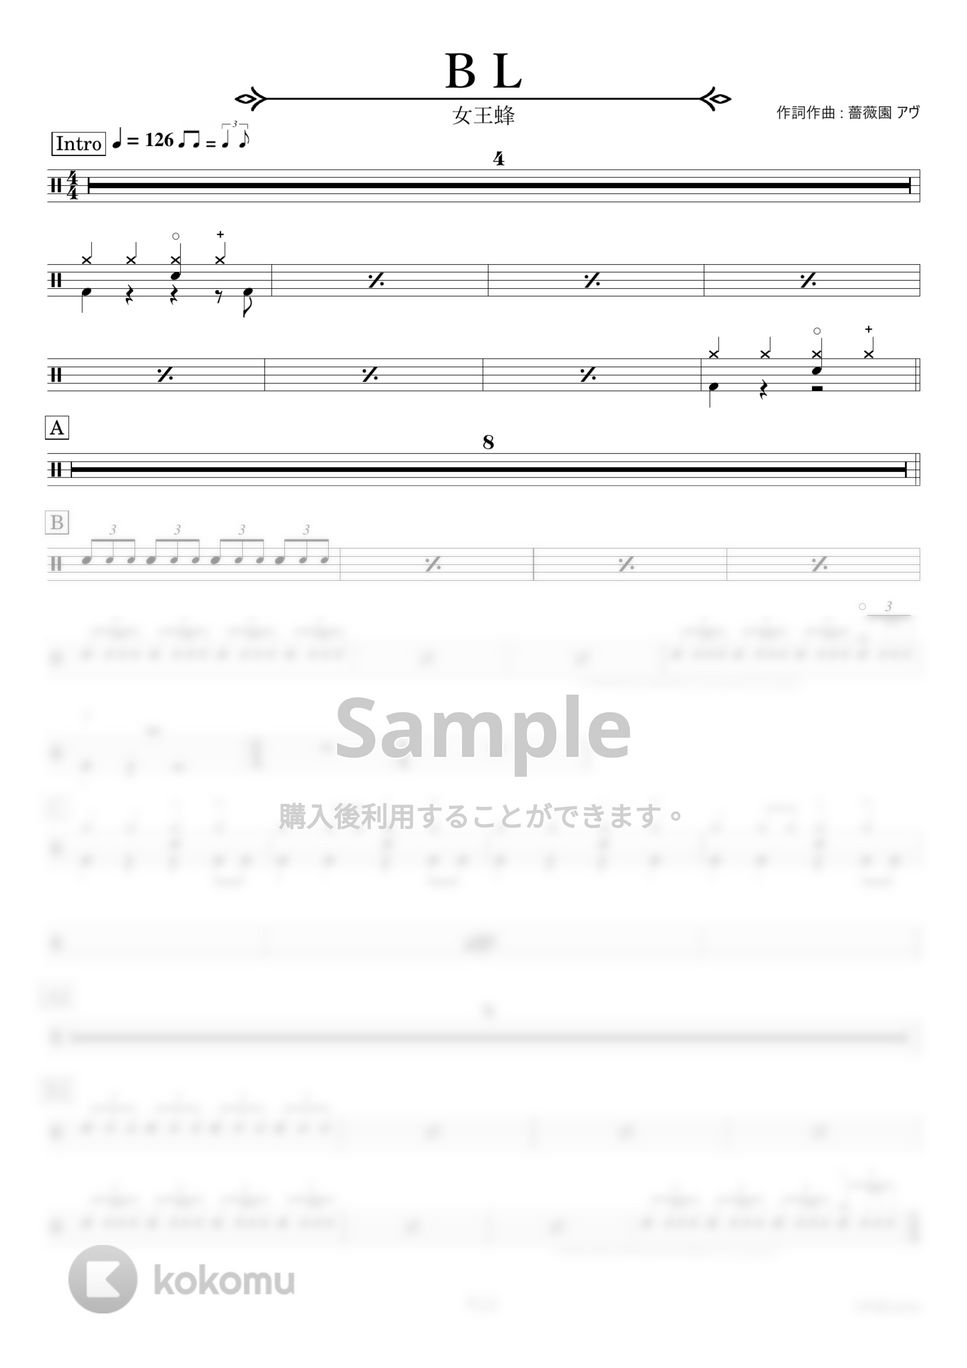 女王蜂 - ＢＬ【ドラム楽譜〔完コピ〕】.pdf by HYdrums